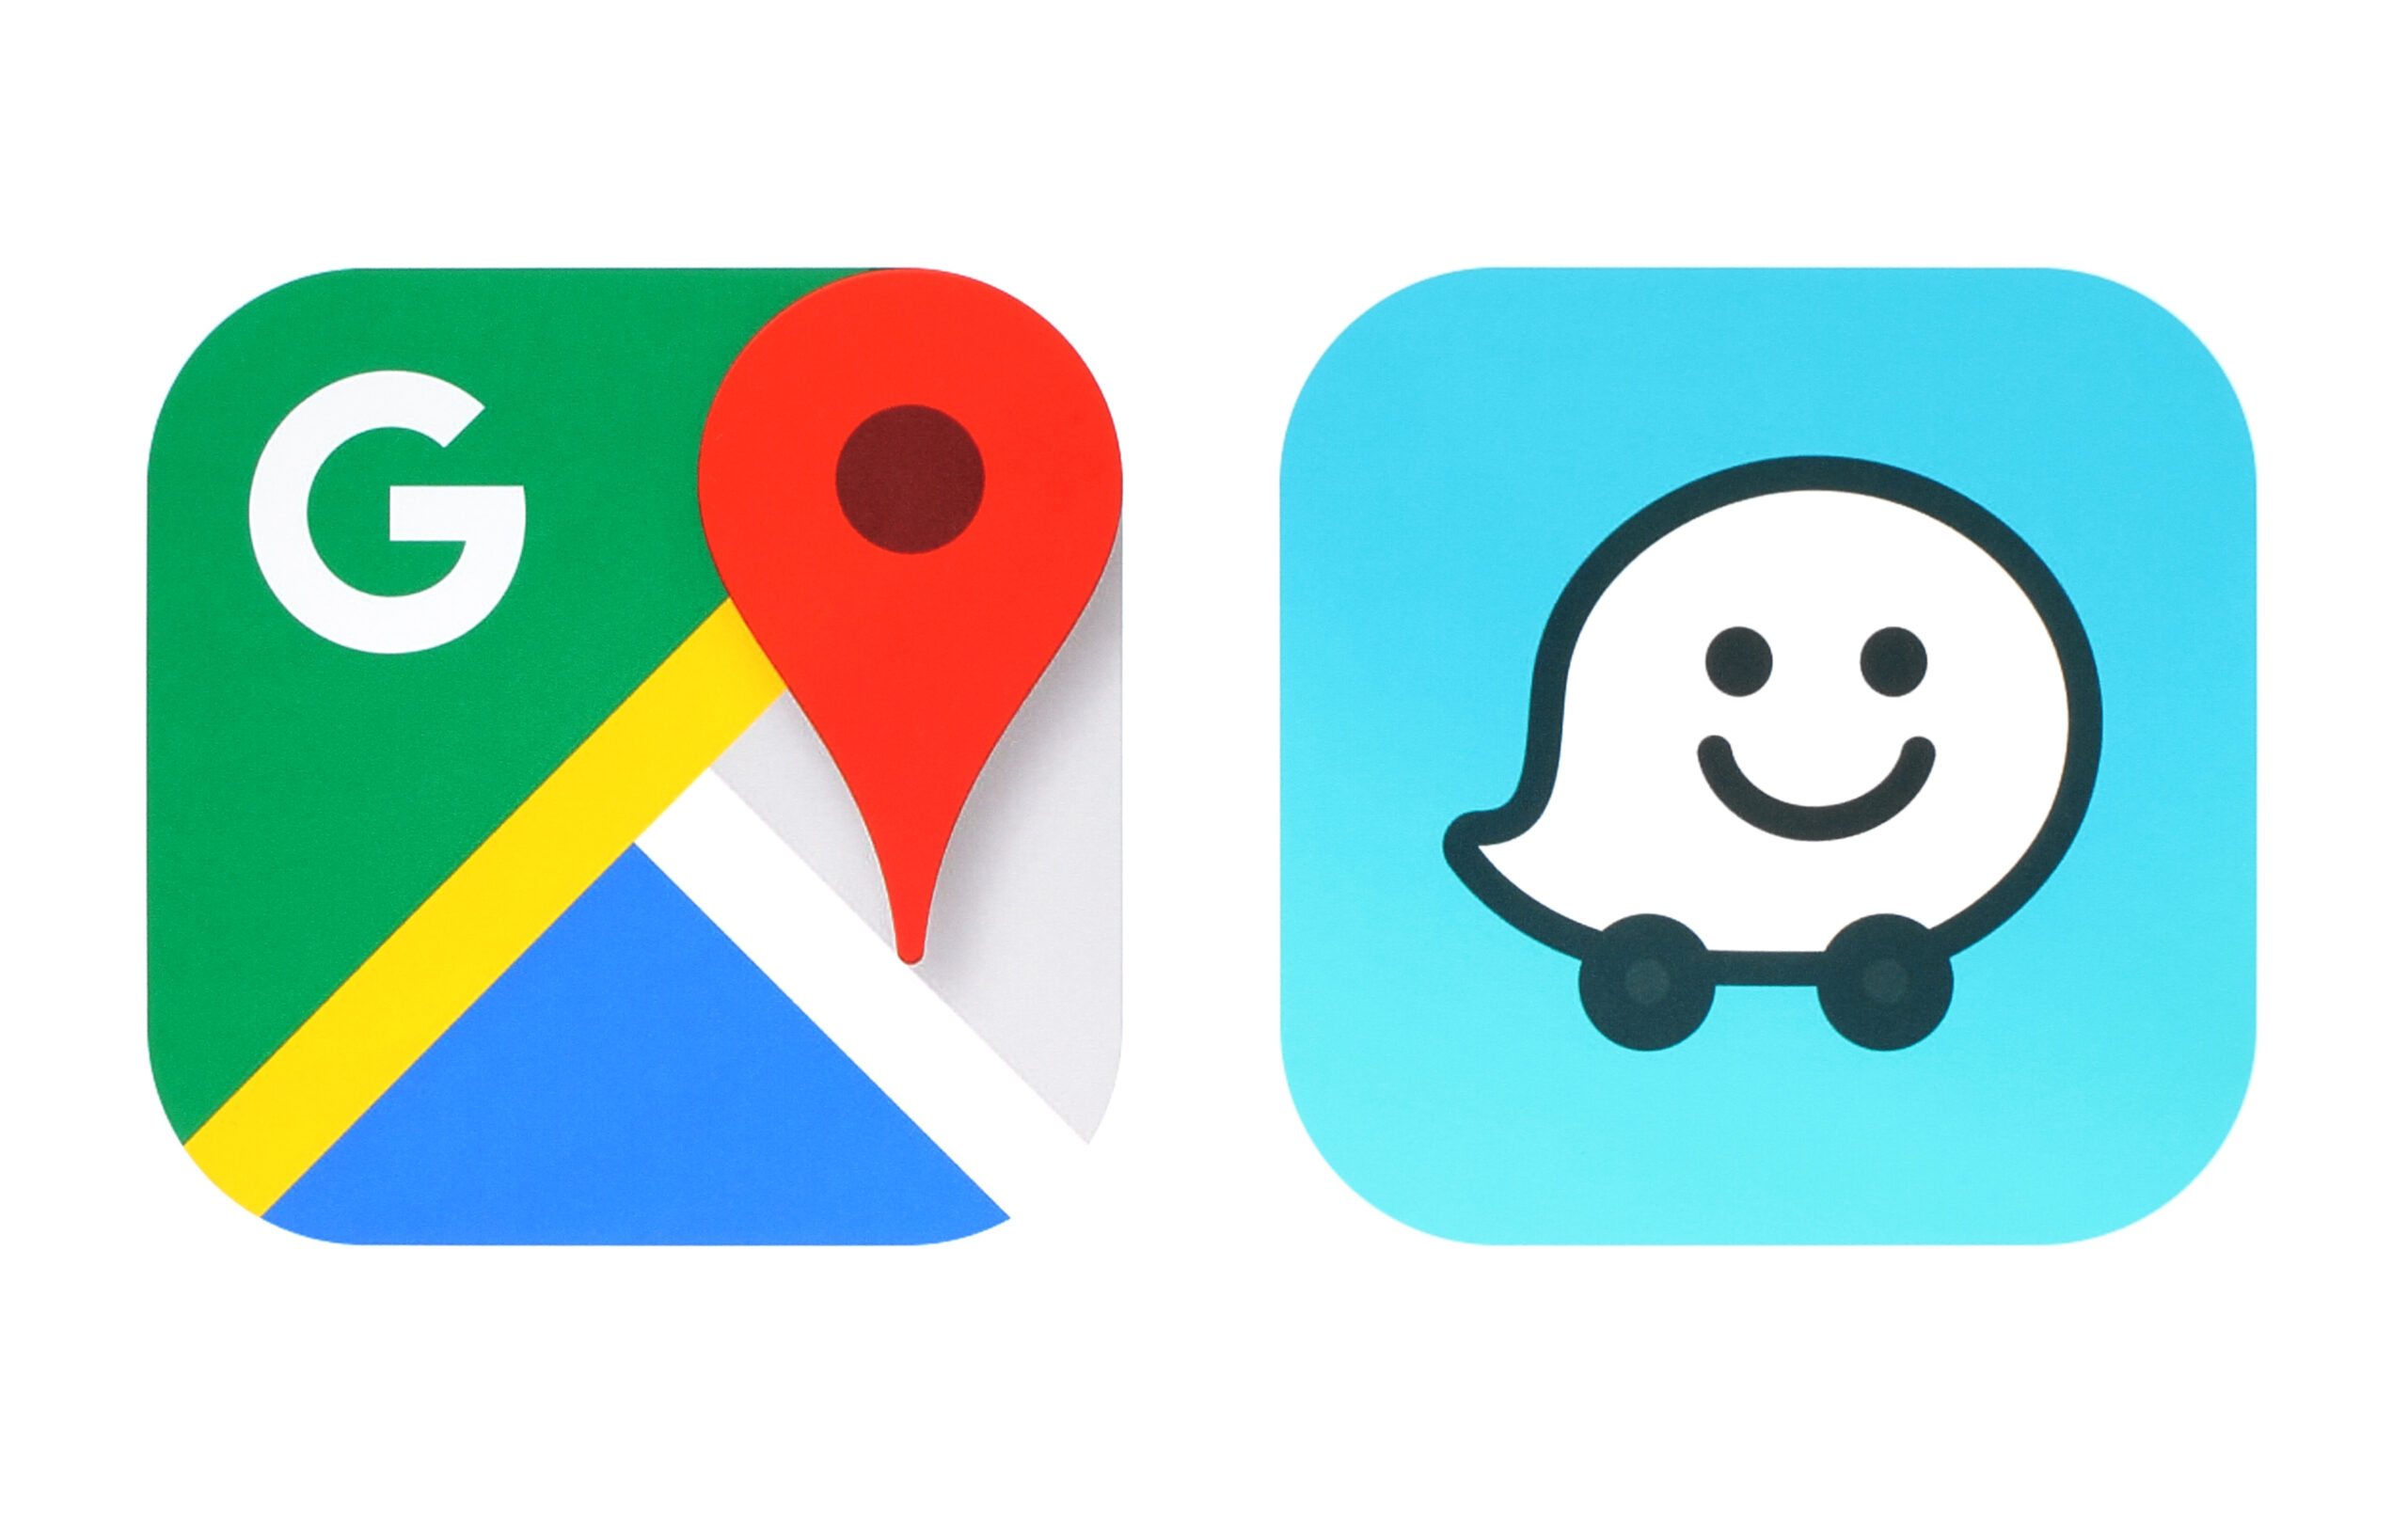 Google Maps and Waze